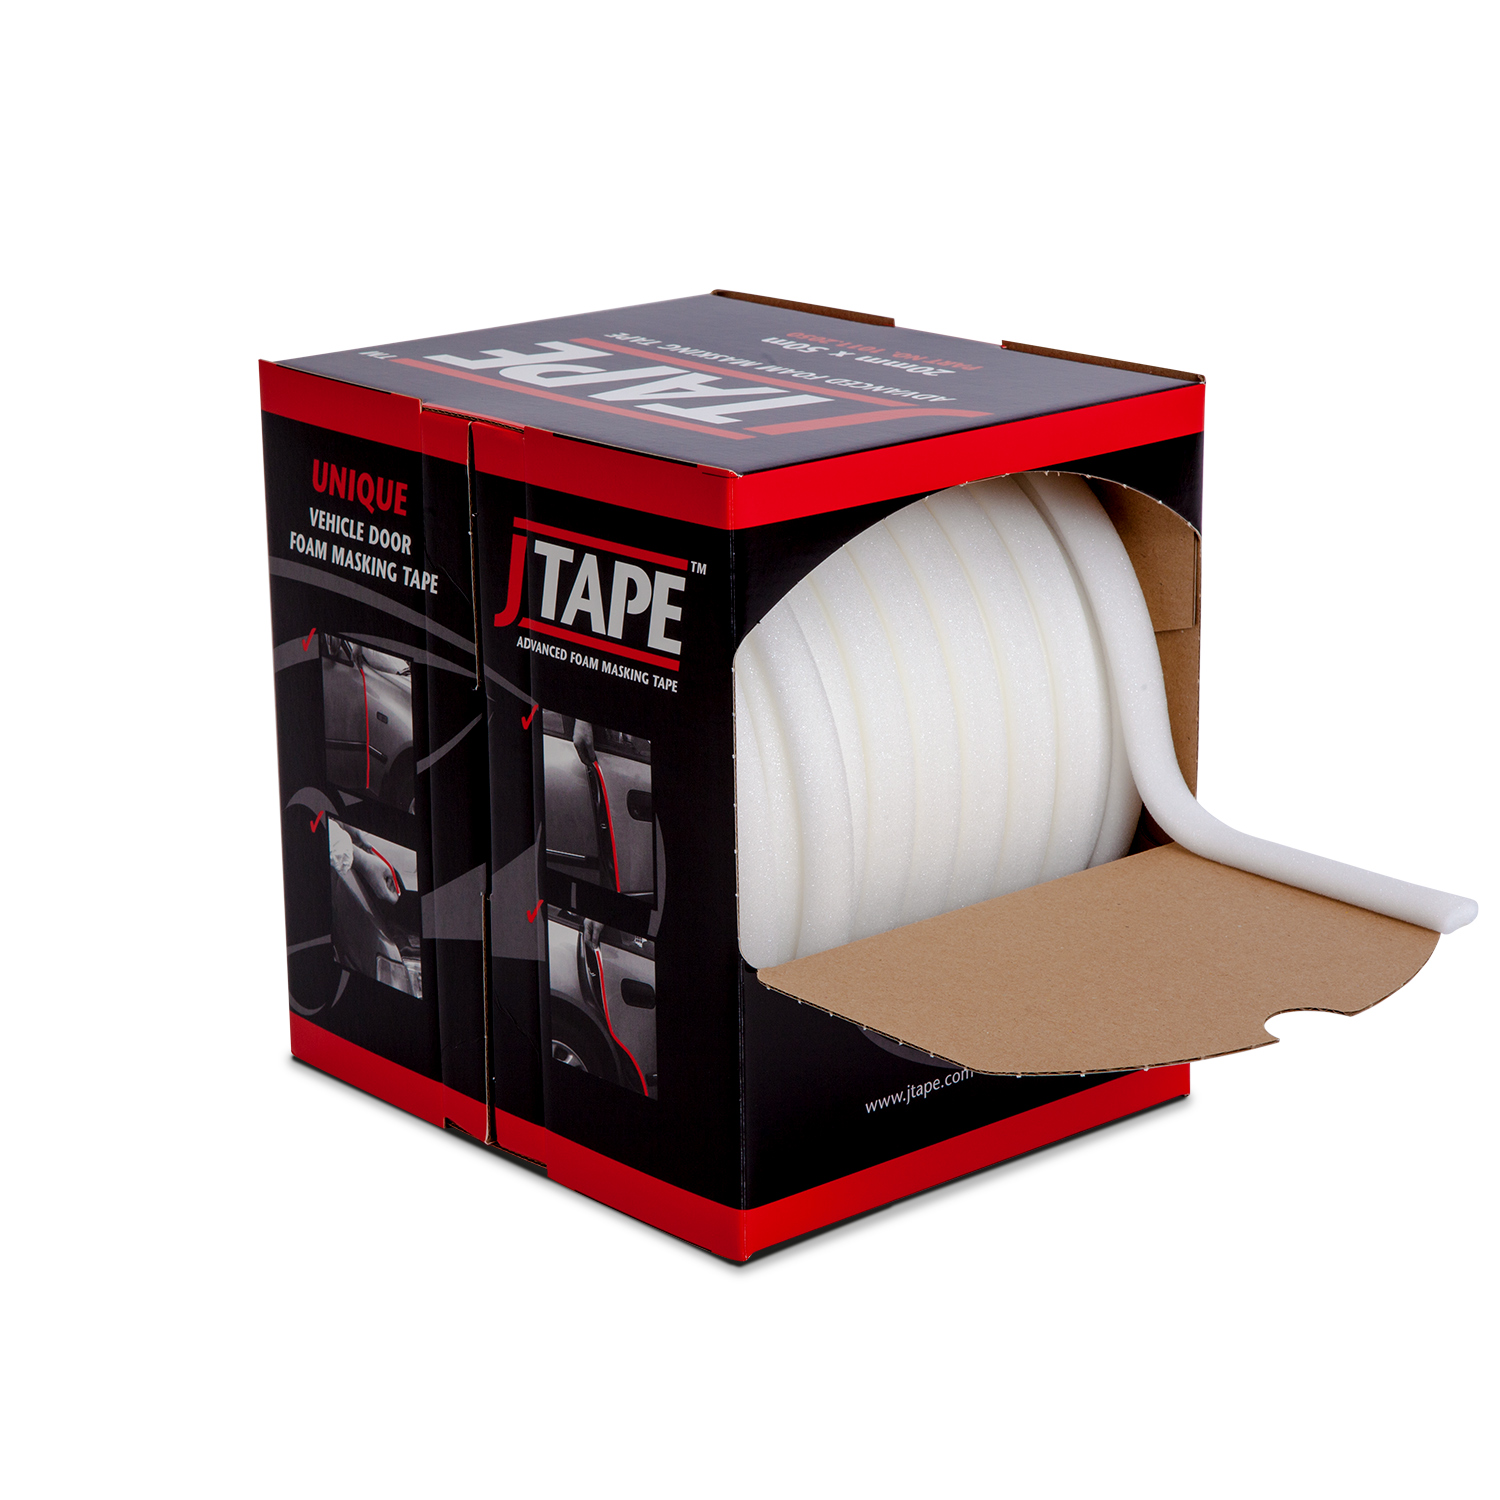 Masking foam. Ta001-STD Foam Tape 13mmx50m. Валик для проемов поролоновый. JTAPE маскирующая лента no Edge blending Tape для плавного перехода 20мм х 5м. IQ валик поролоновый для проёмов классический 13mm x 50m.